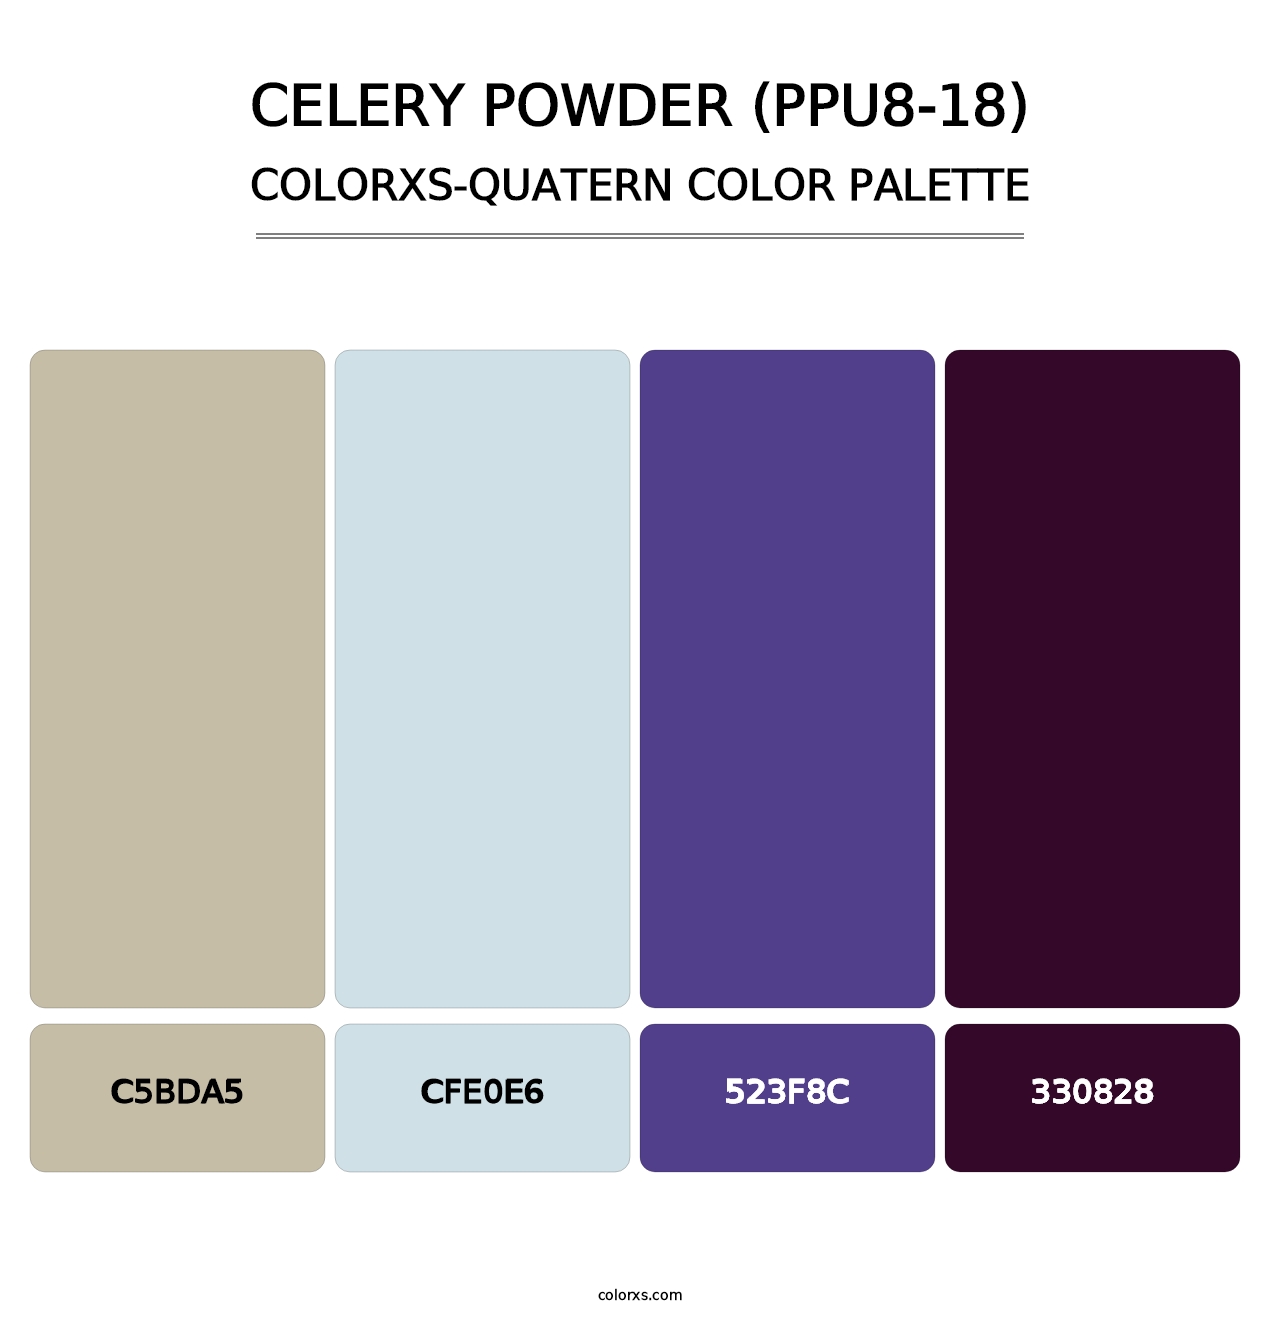 Celery Powder (PPU8-18) - Colorxs Quatern Palette